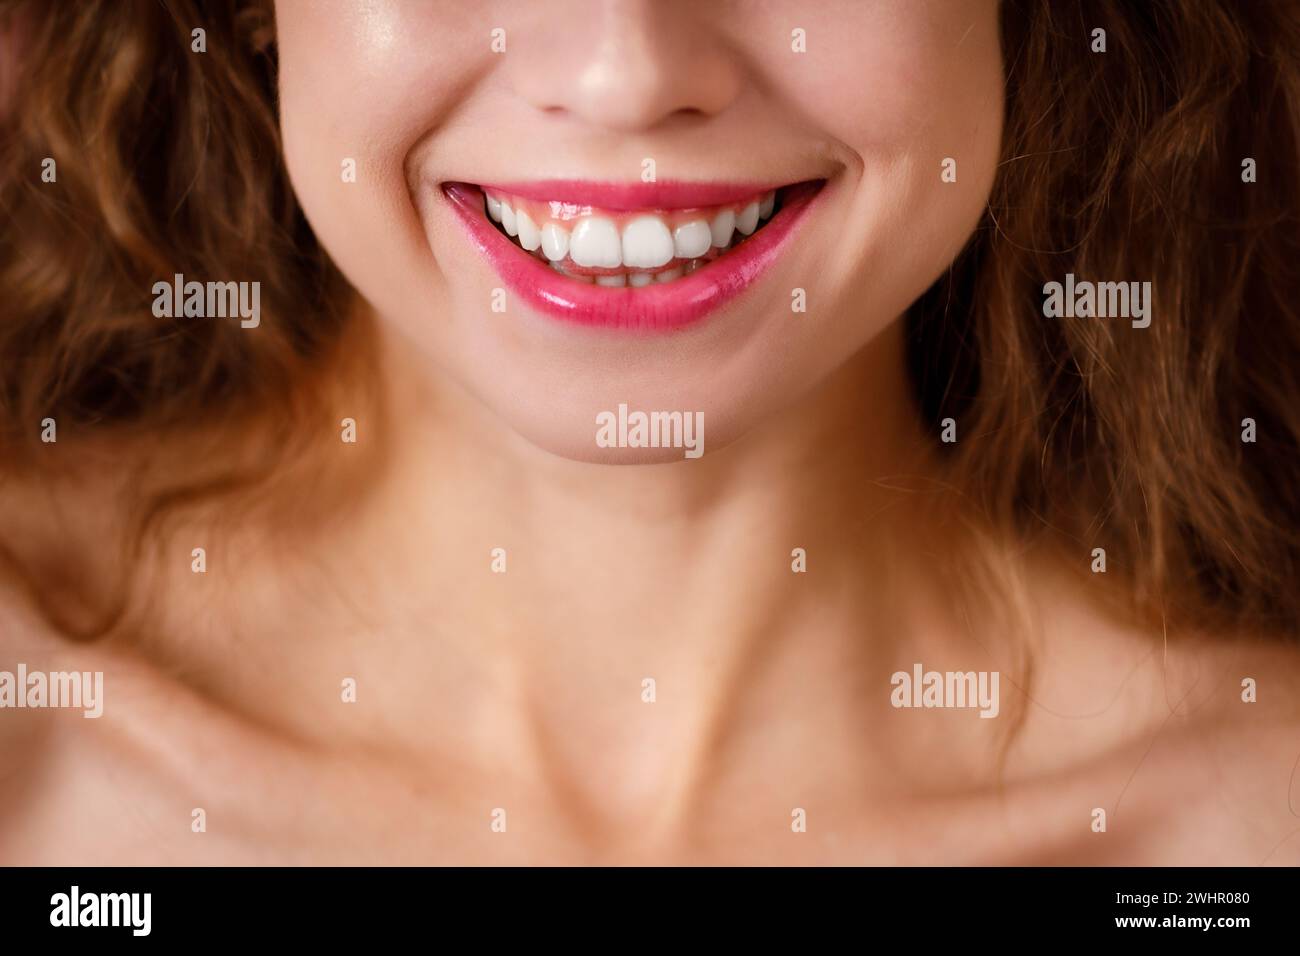 Schönes breites Lächeln einer jungen Frau mit gesunden weißen Zähnen Stockfoto